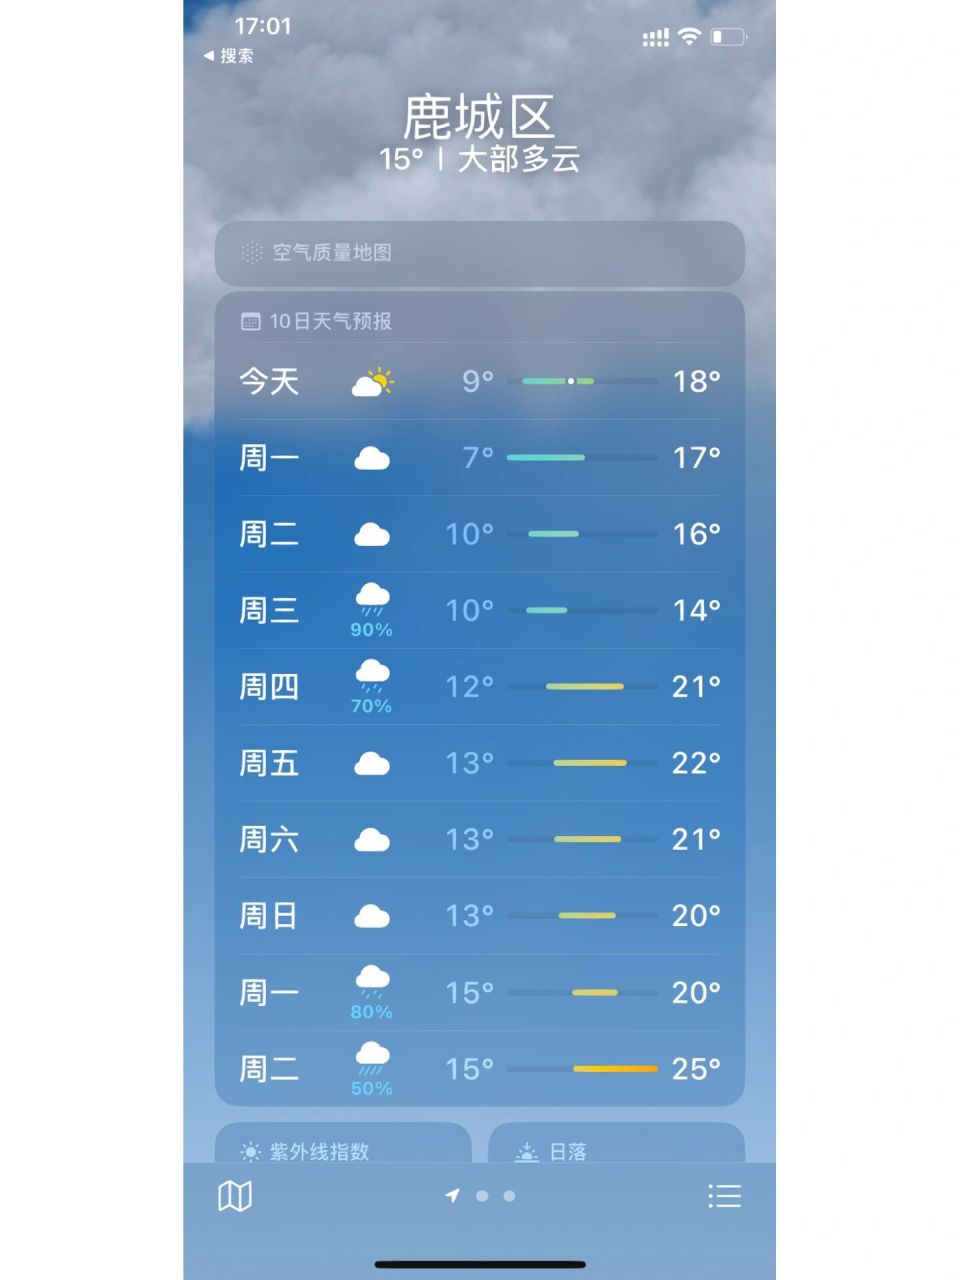 温州天气 给大家实时播报一下温州的天气,有点小冷,可以带着外套,一定